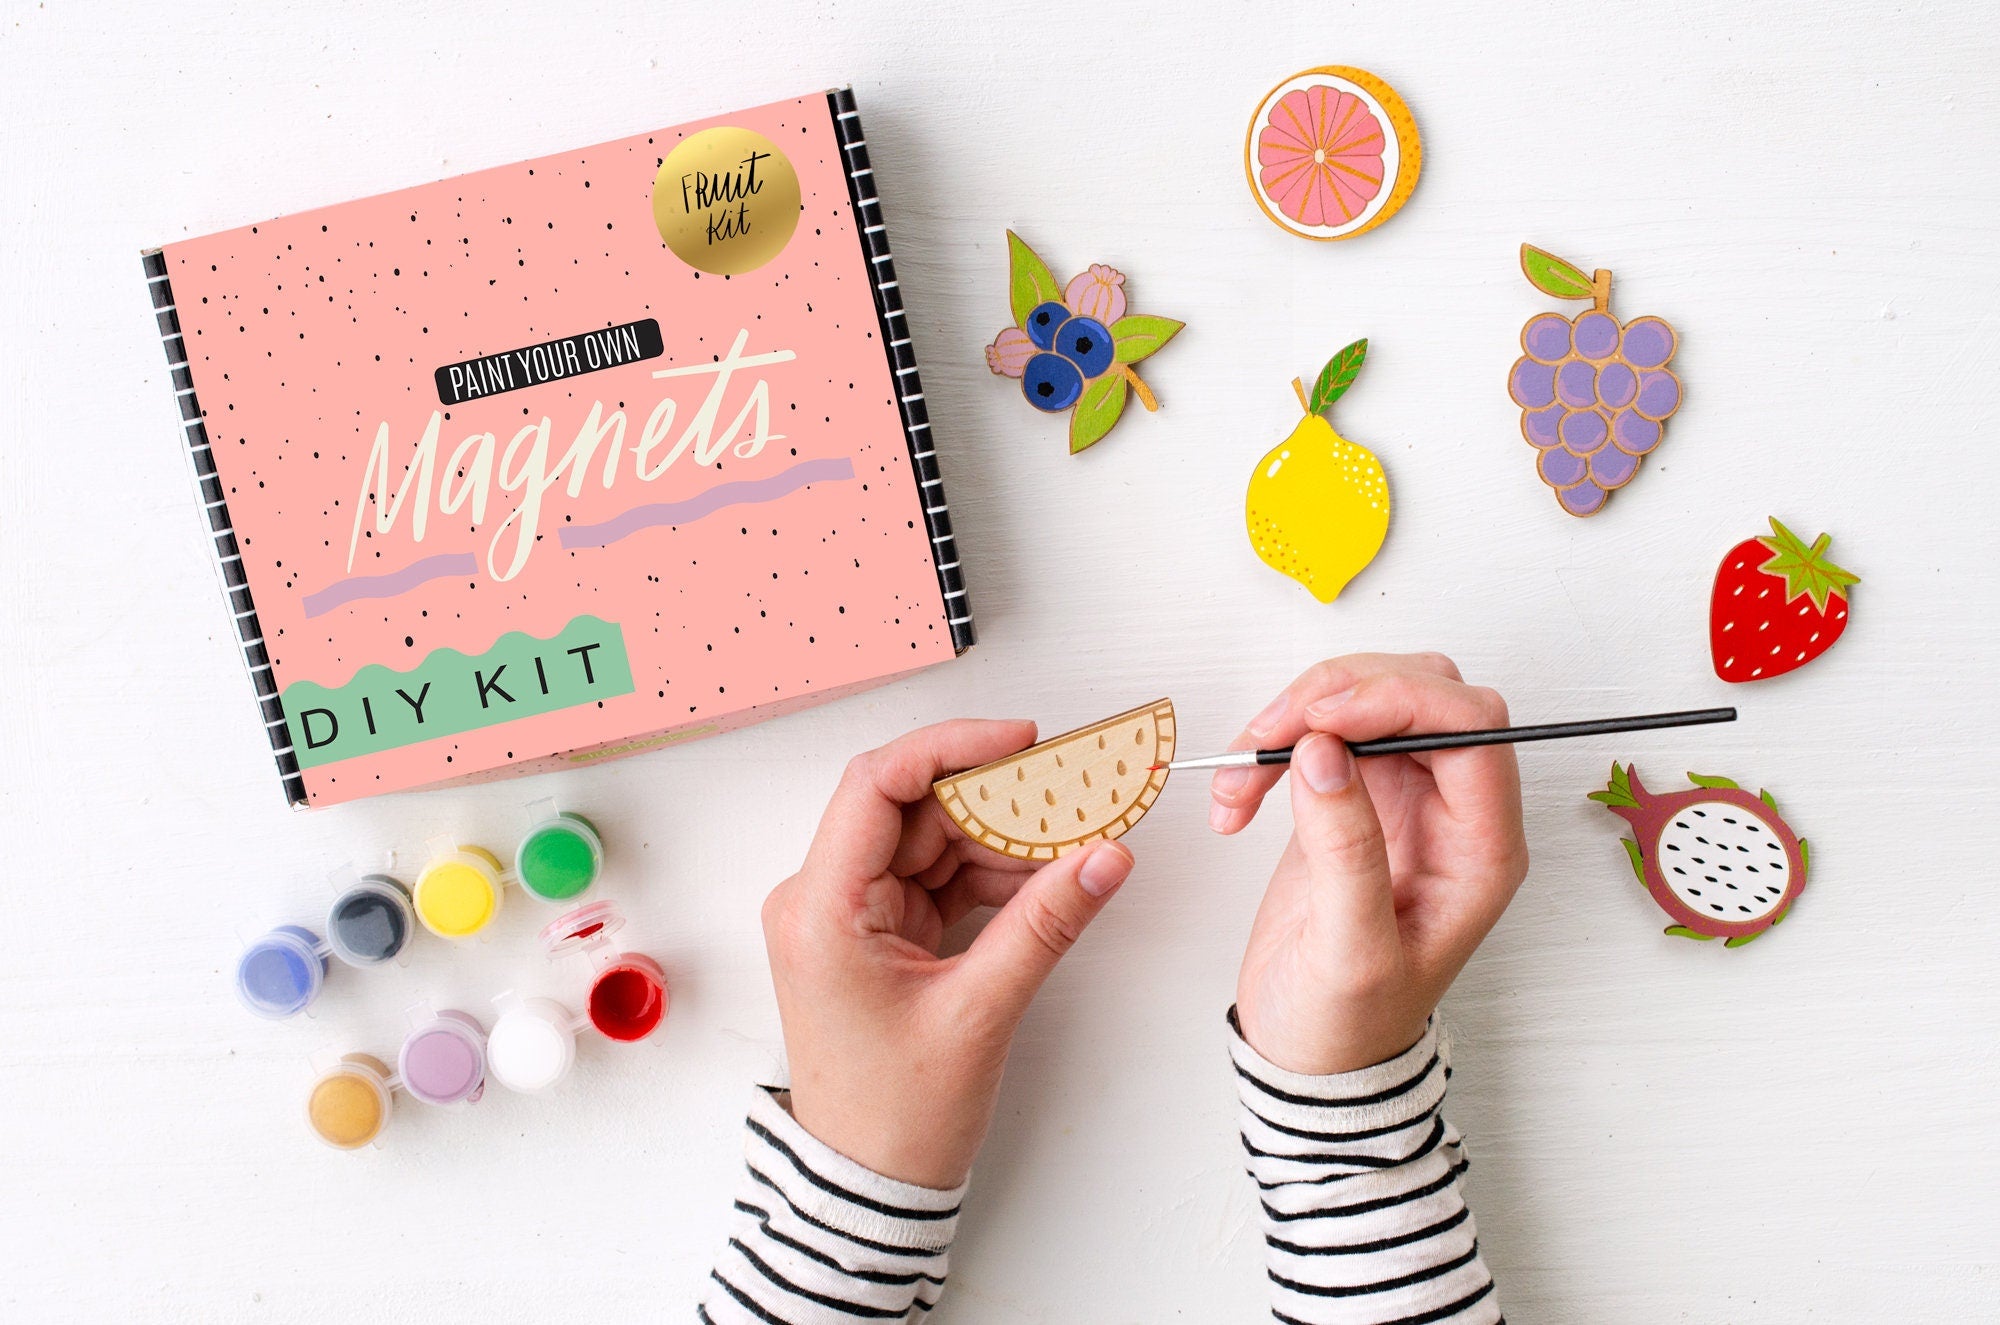 DIY Painting Kit, Fruit Magnet, Craft kit for kids, tween